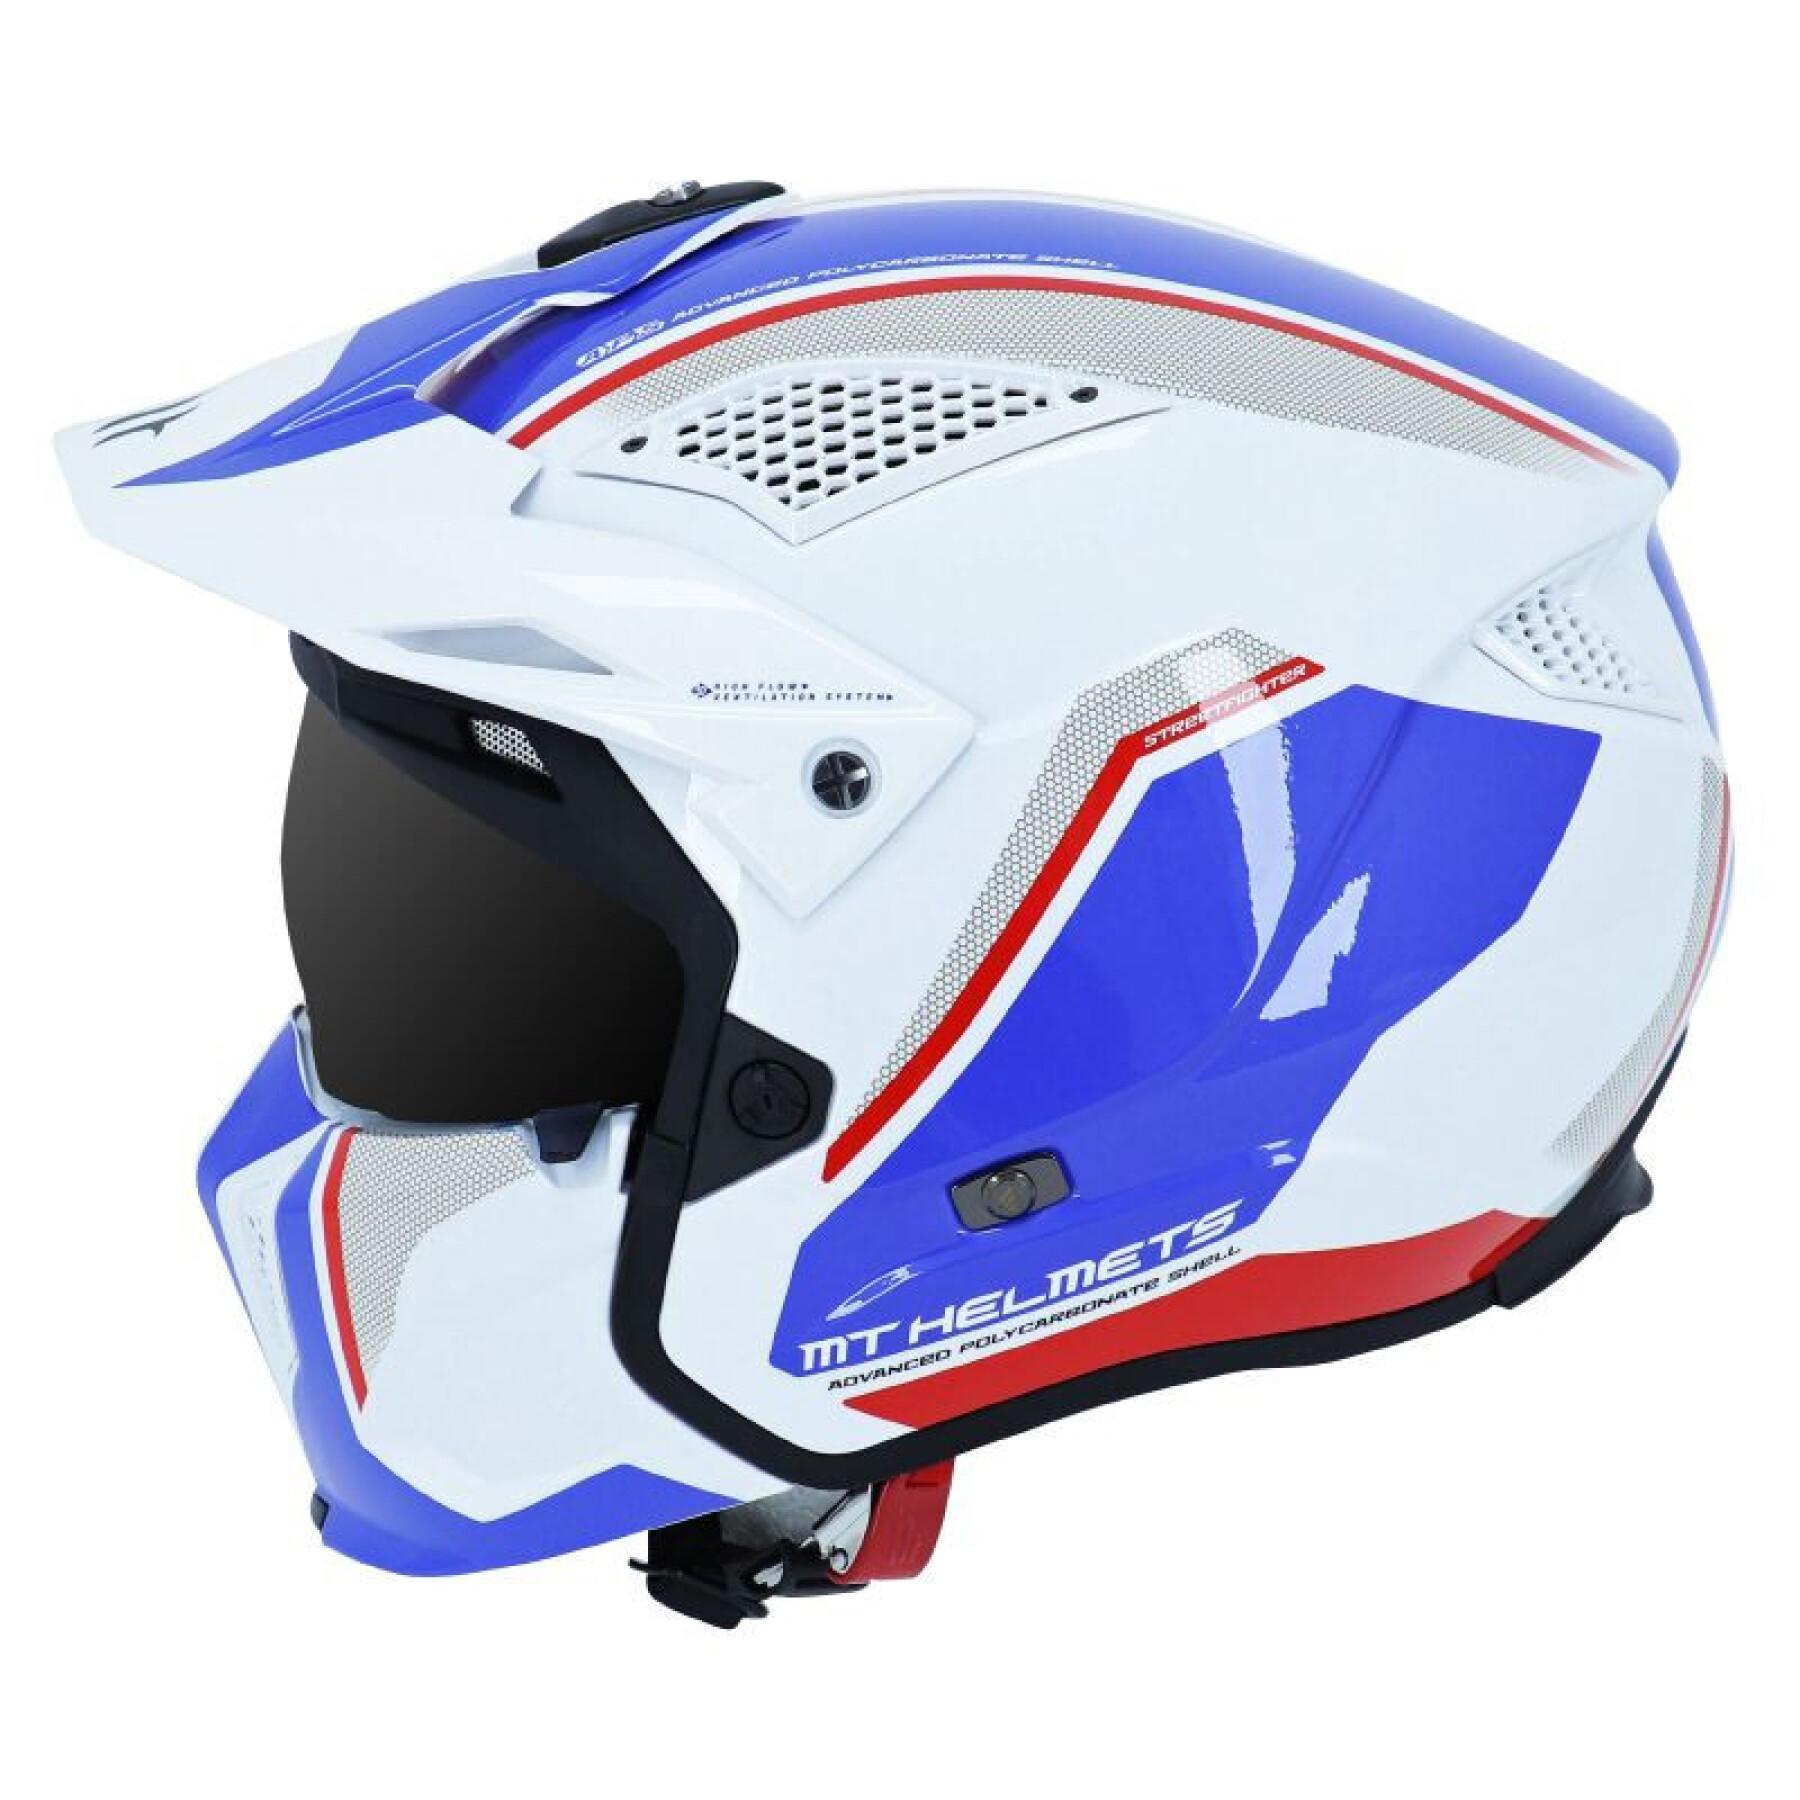 Casco scuro convertibile a scudo singolo con mentoniera rimovibile MT Helmets MT STREETFIGHTER SV SKULL (consegnato con uno scudo blu extra)